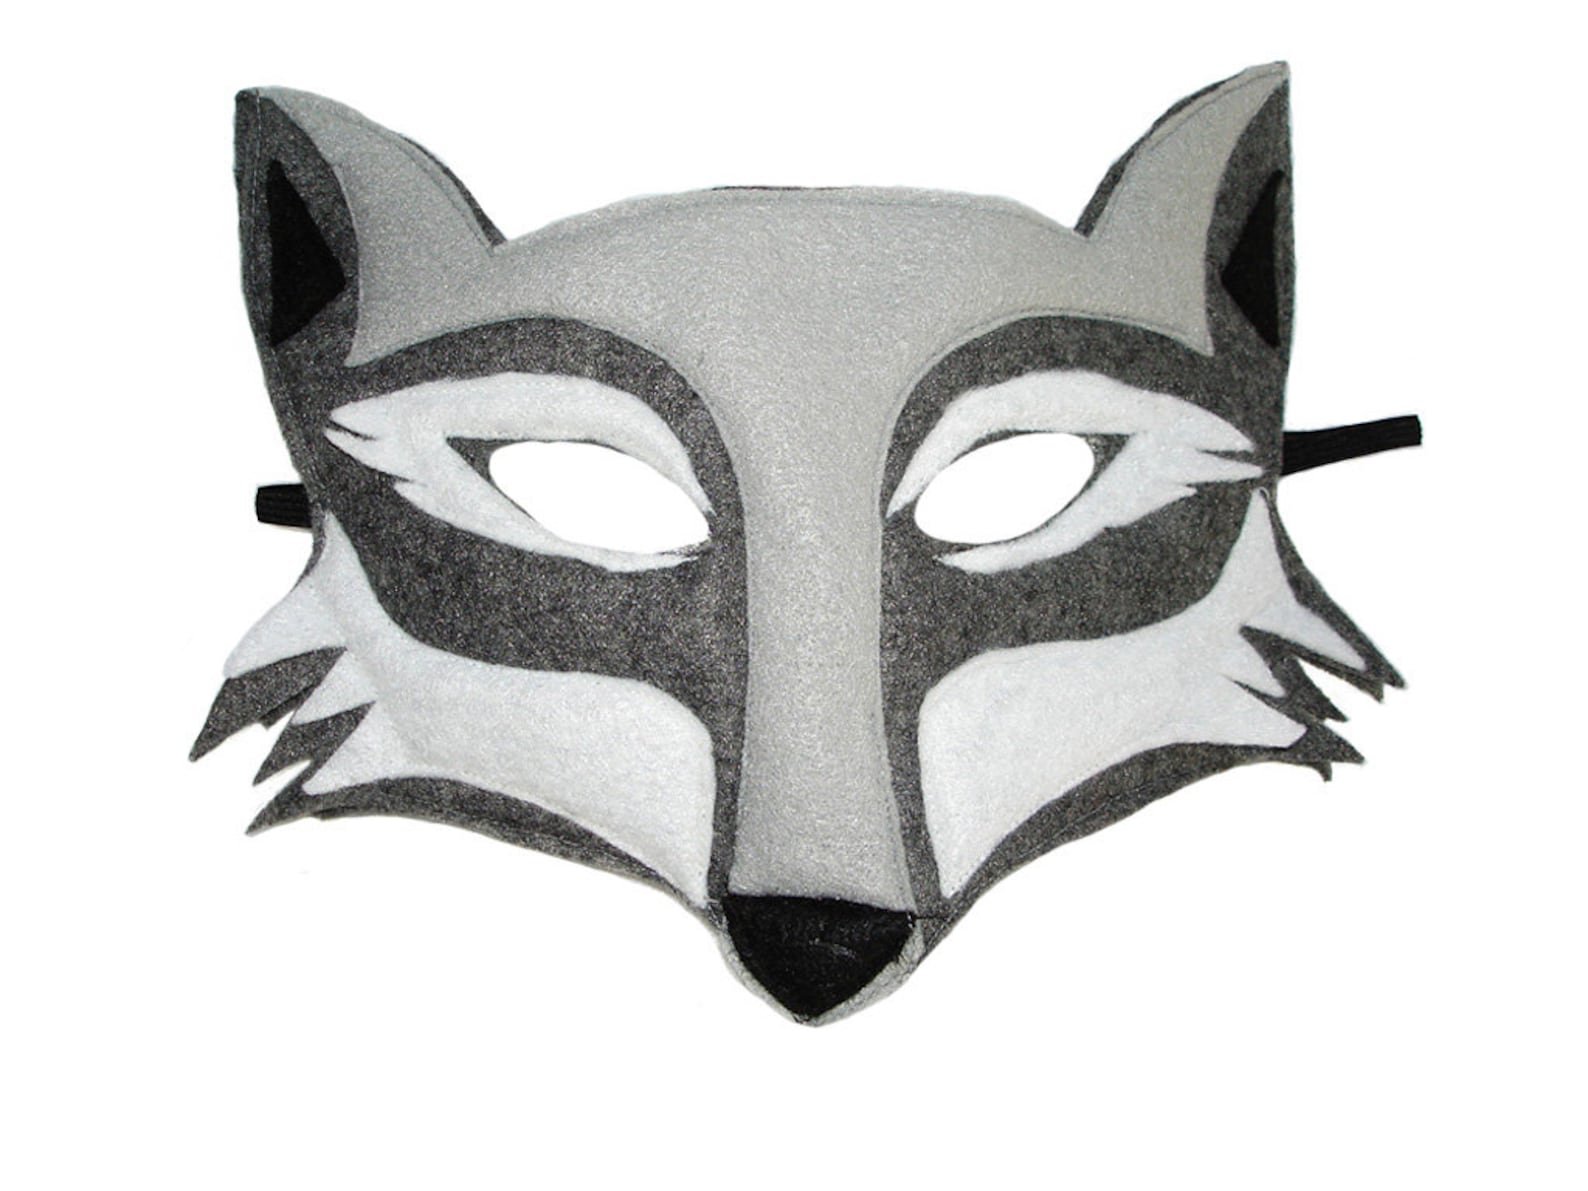 Маска волка из бумаги. Маска волк. Картонная маска волка. Бумажная маска волка. Новогодняя маска волка.